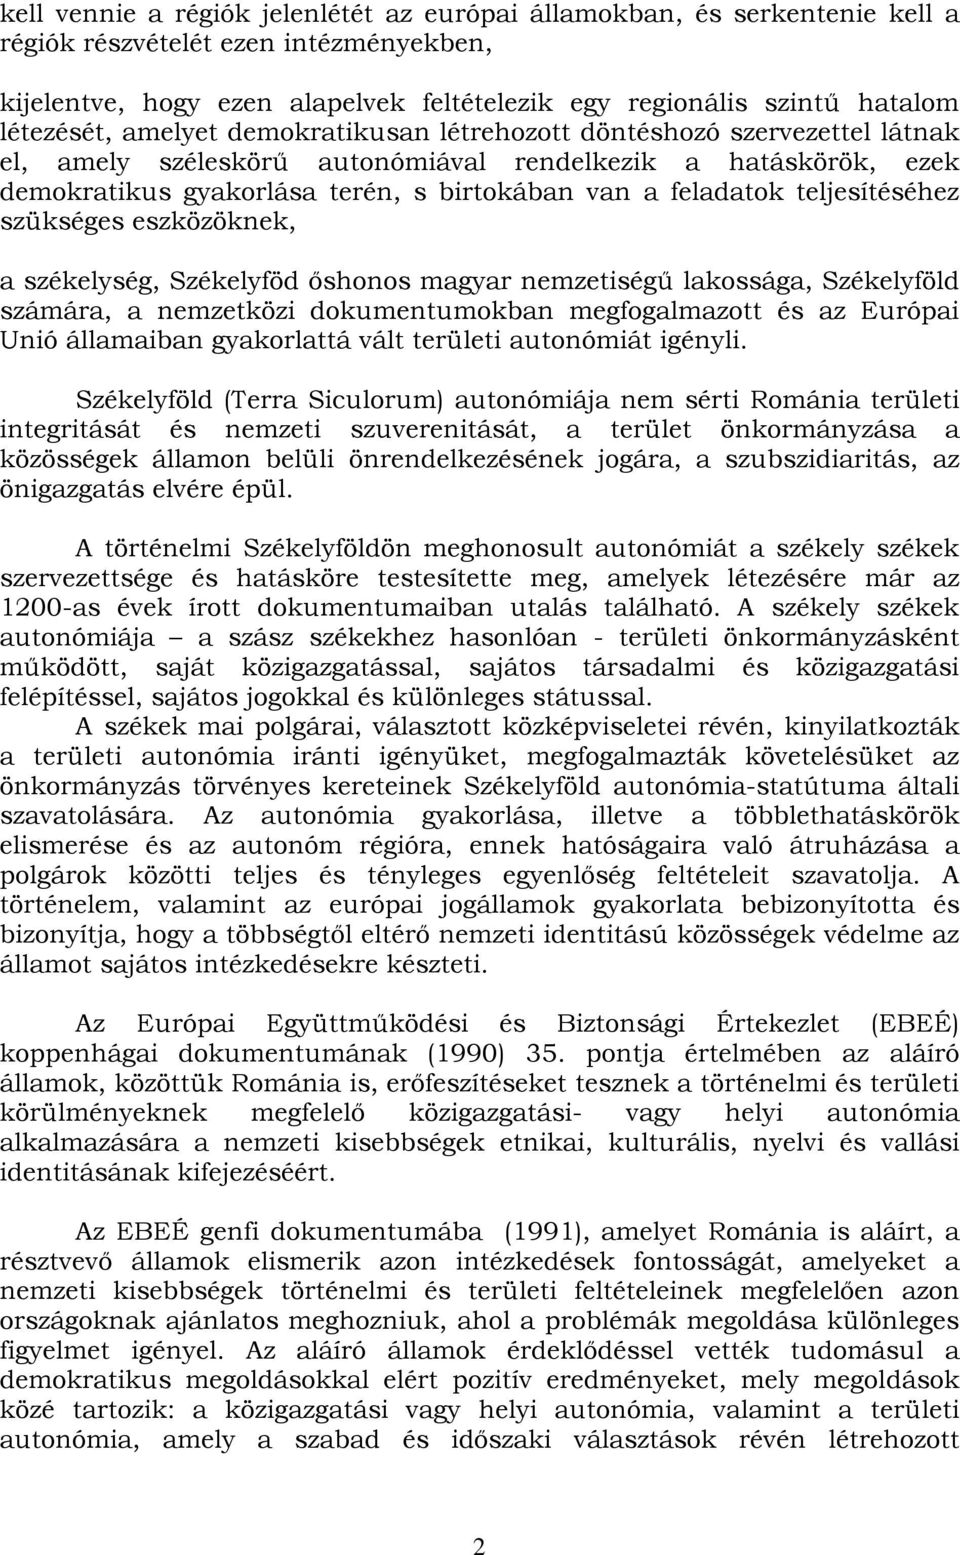 feladatok teljesítéséhez szükséges eszközöknek, a székelység, Székelyföd őshonos magyar nemzetiségű lakossága, Székelyföld számára, a nemzetközi dokumentumokban megfogalmazott és az Európai Unió